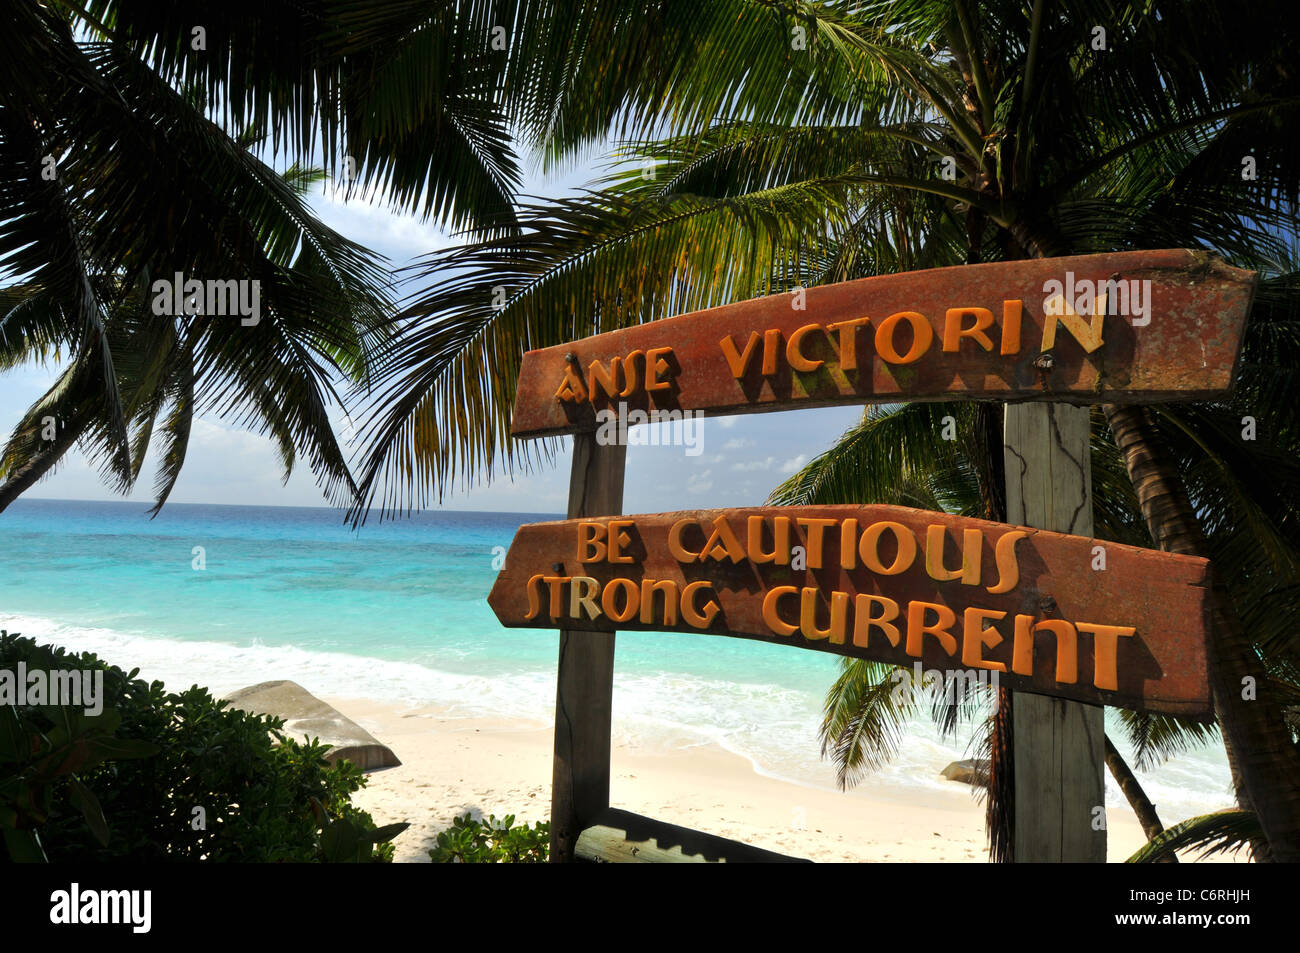 Anse Victorin, als eines der besten Strände der Welt, Fregate Island Private Resort Urlaubsinsel, die Seychellen. Stockfoto